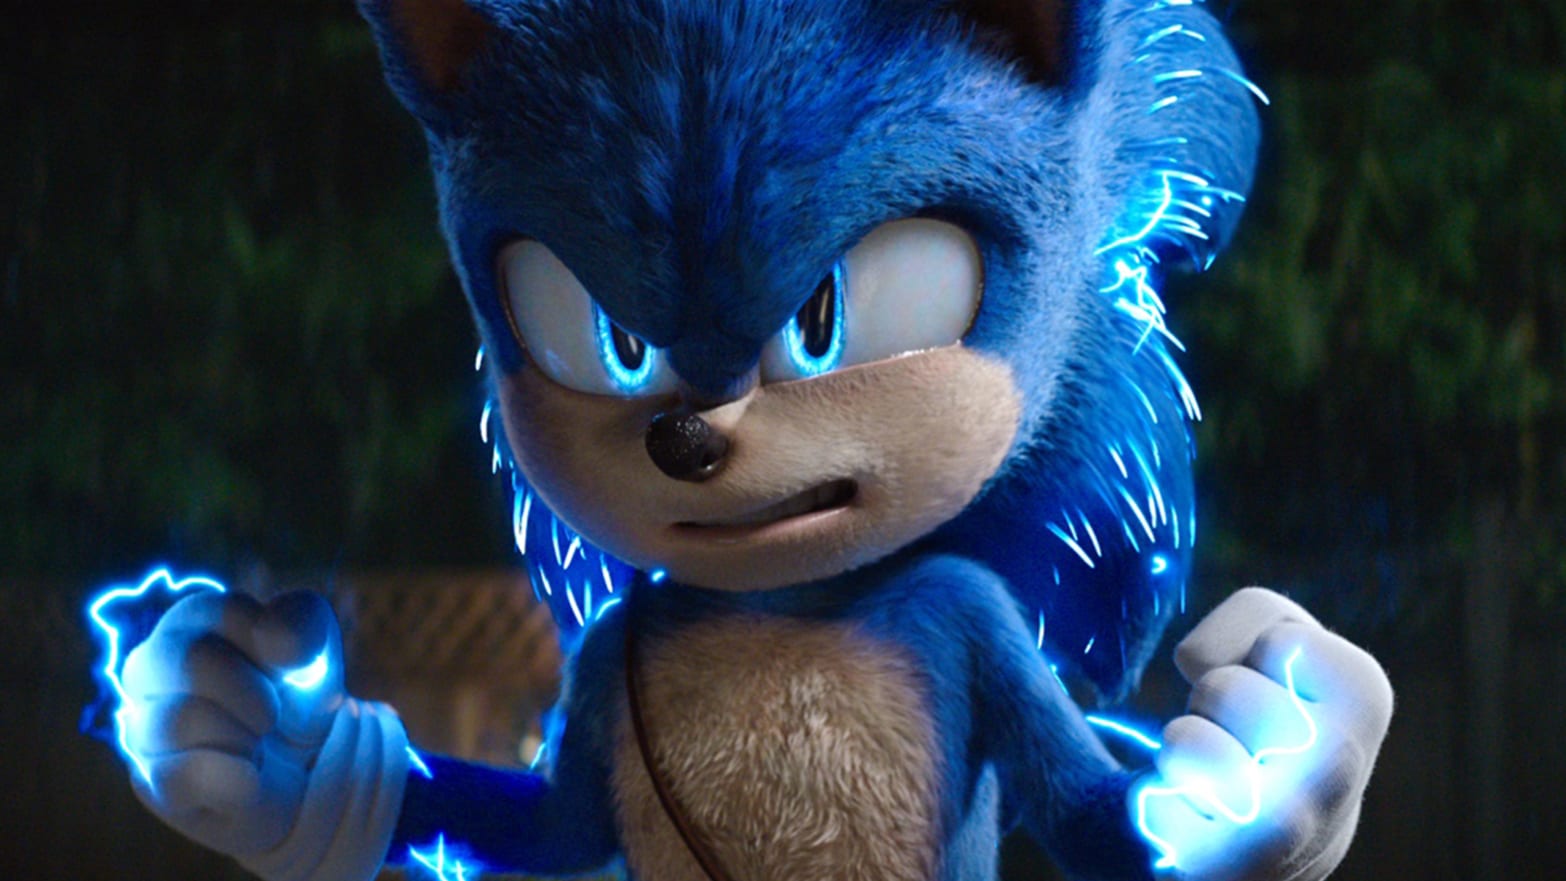 Sonic The Hedgehog 2: O Filme – Análise